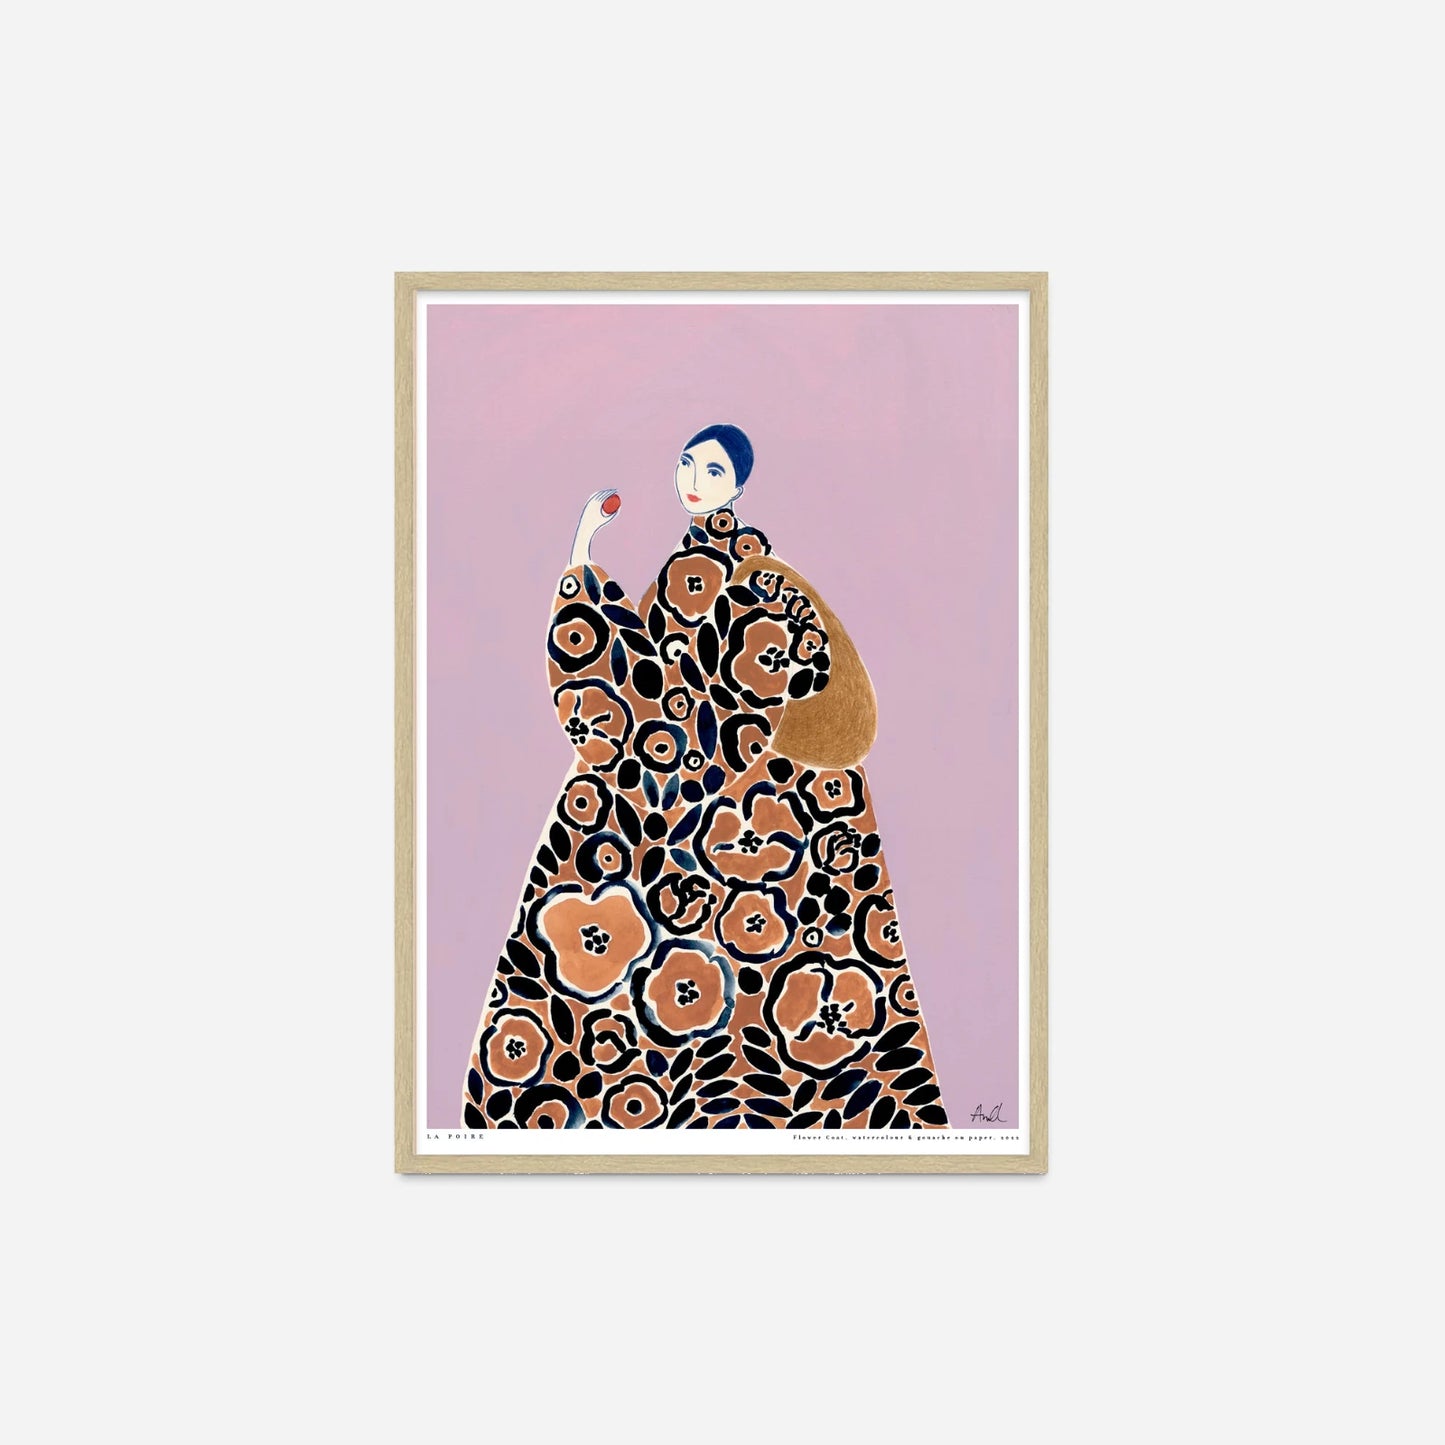 Flower Coat plakat af La Poire fra Poster & Frame